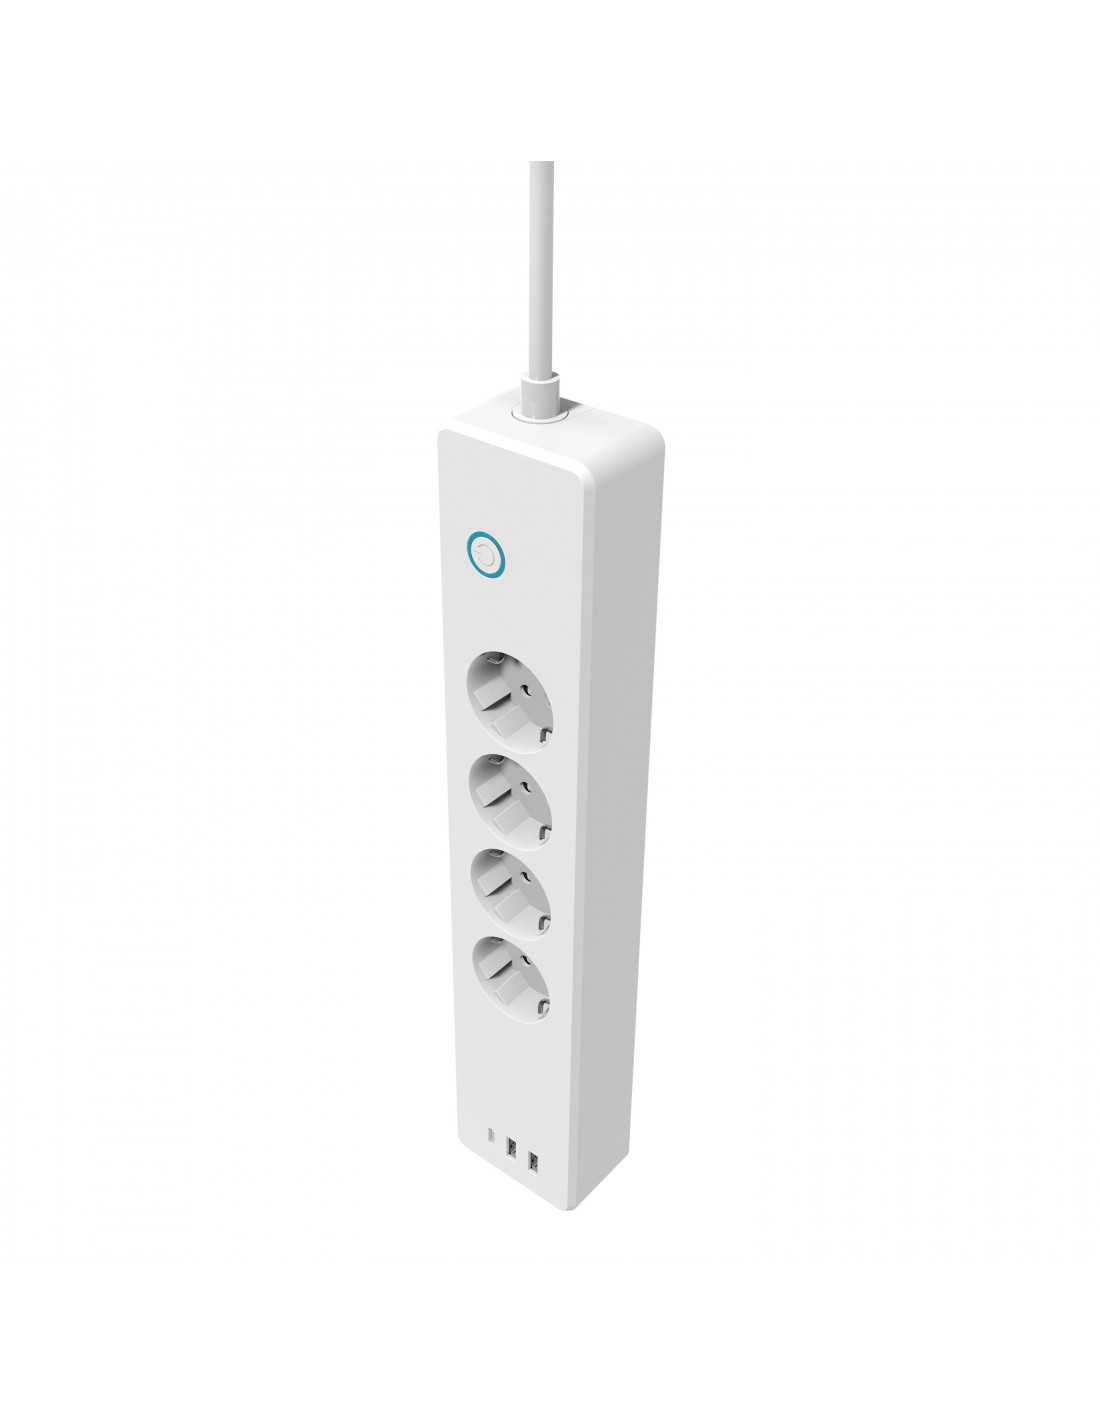 muvit iO Regleta Wifi con 4 tomas de corriente, 2 puertos USSB QC3.0 (18W)  1 puerto Tipo C PD (20W) y monitor de energía